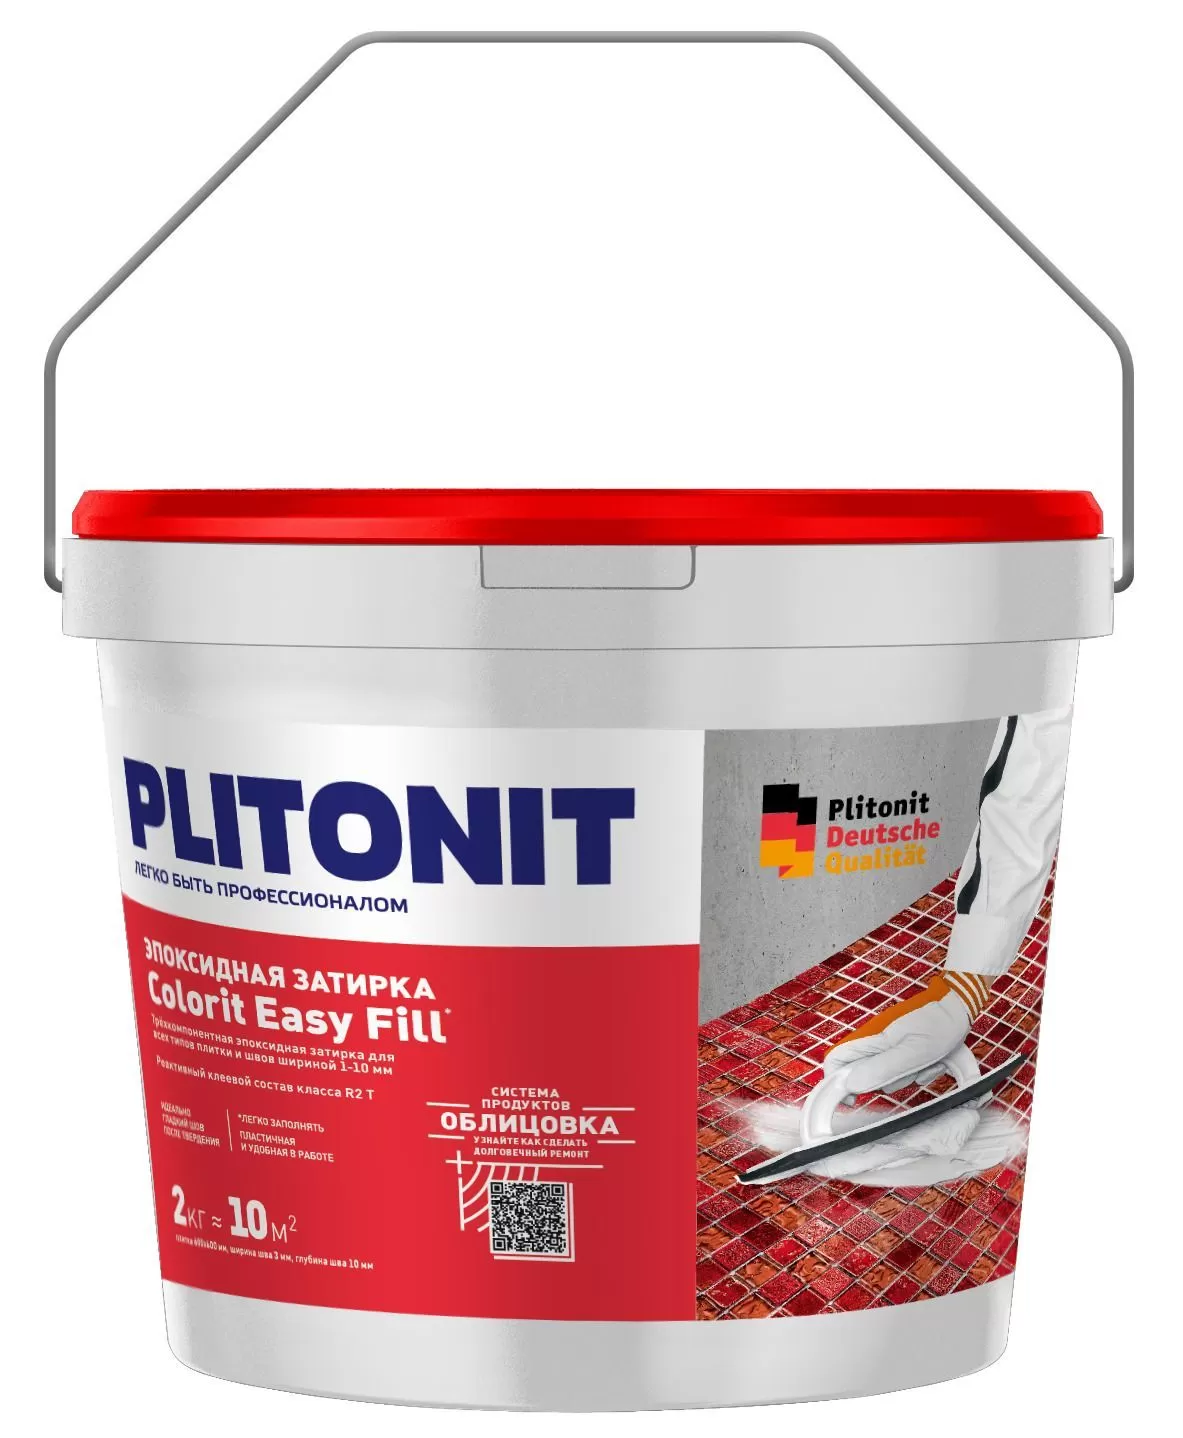 Купить Затирка эпоксидная PLITONIT Colorit EasyFill антрацит 2кг (ведро) Н008638